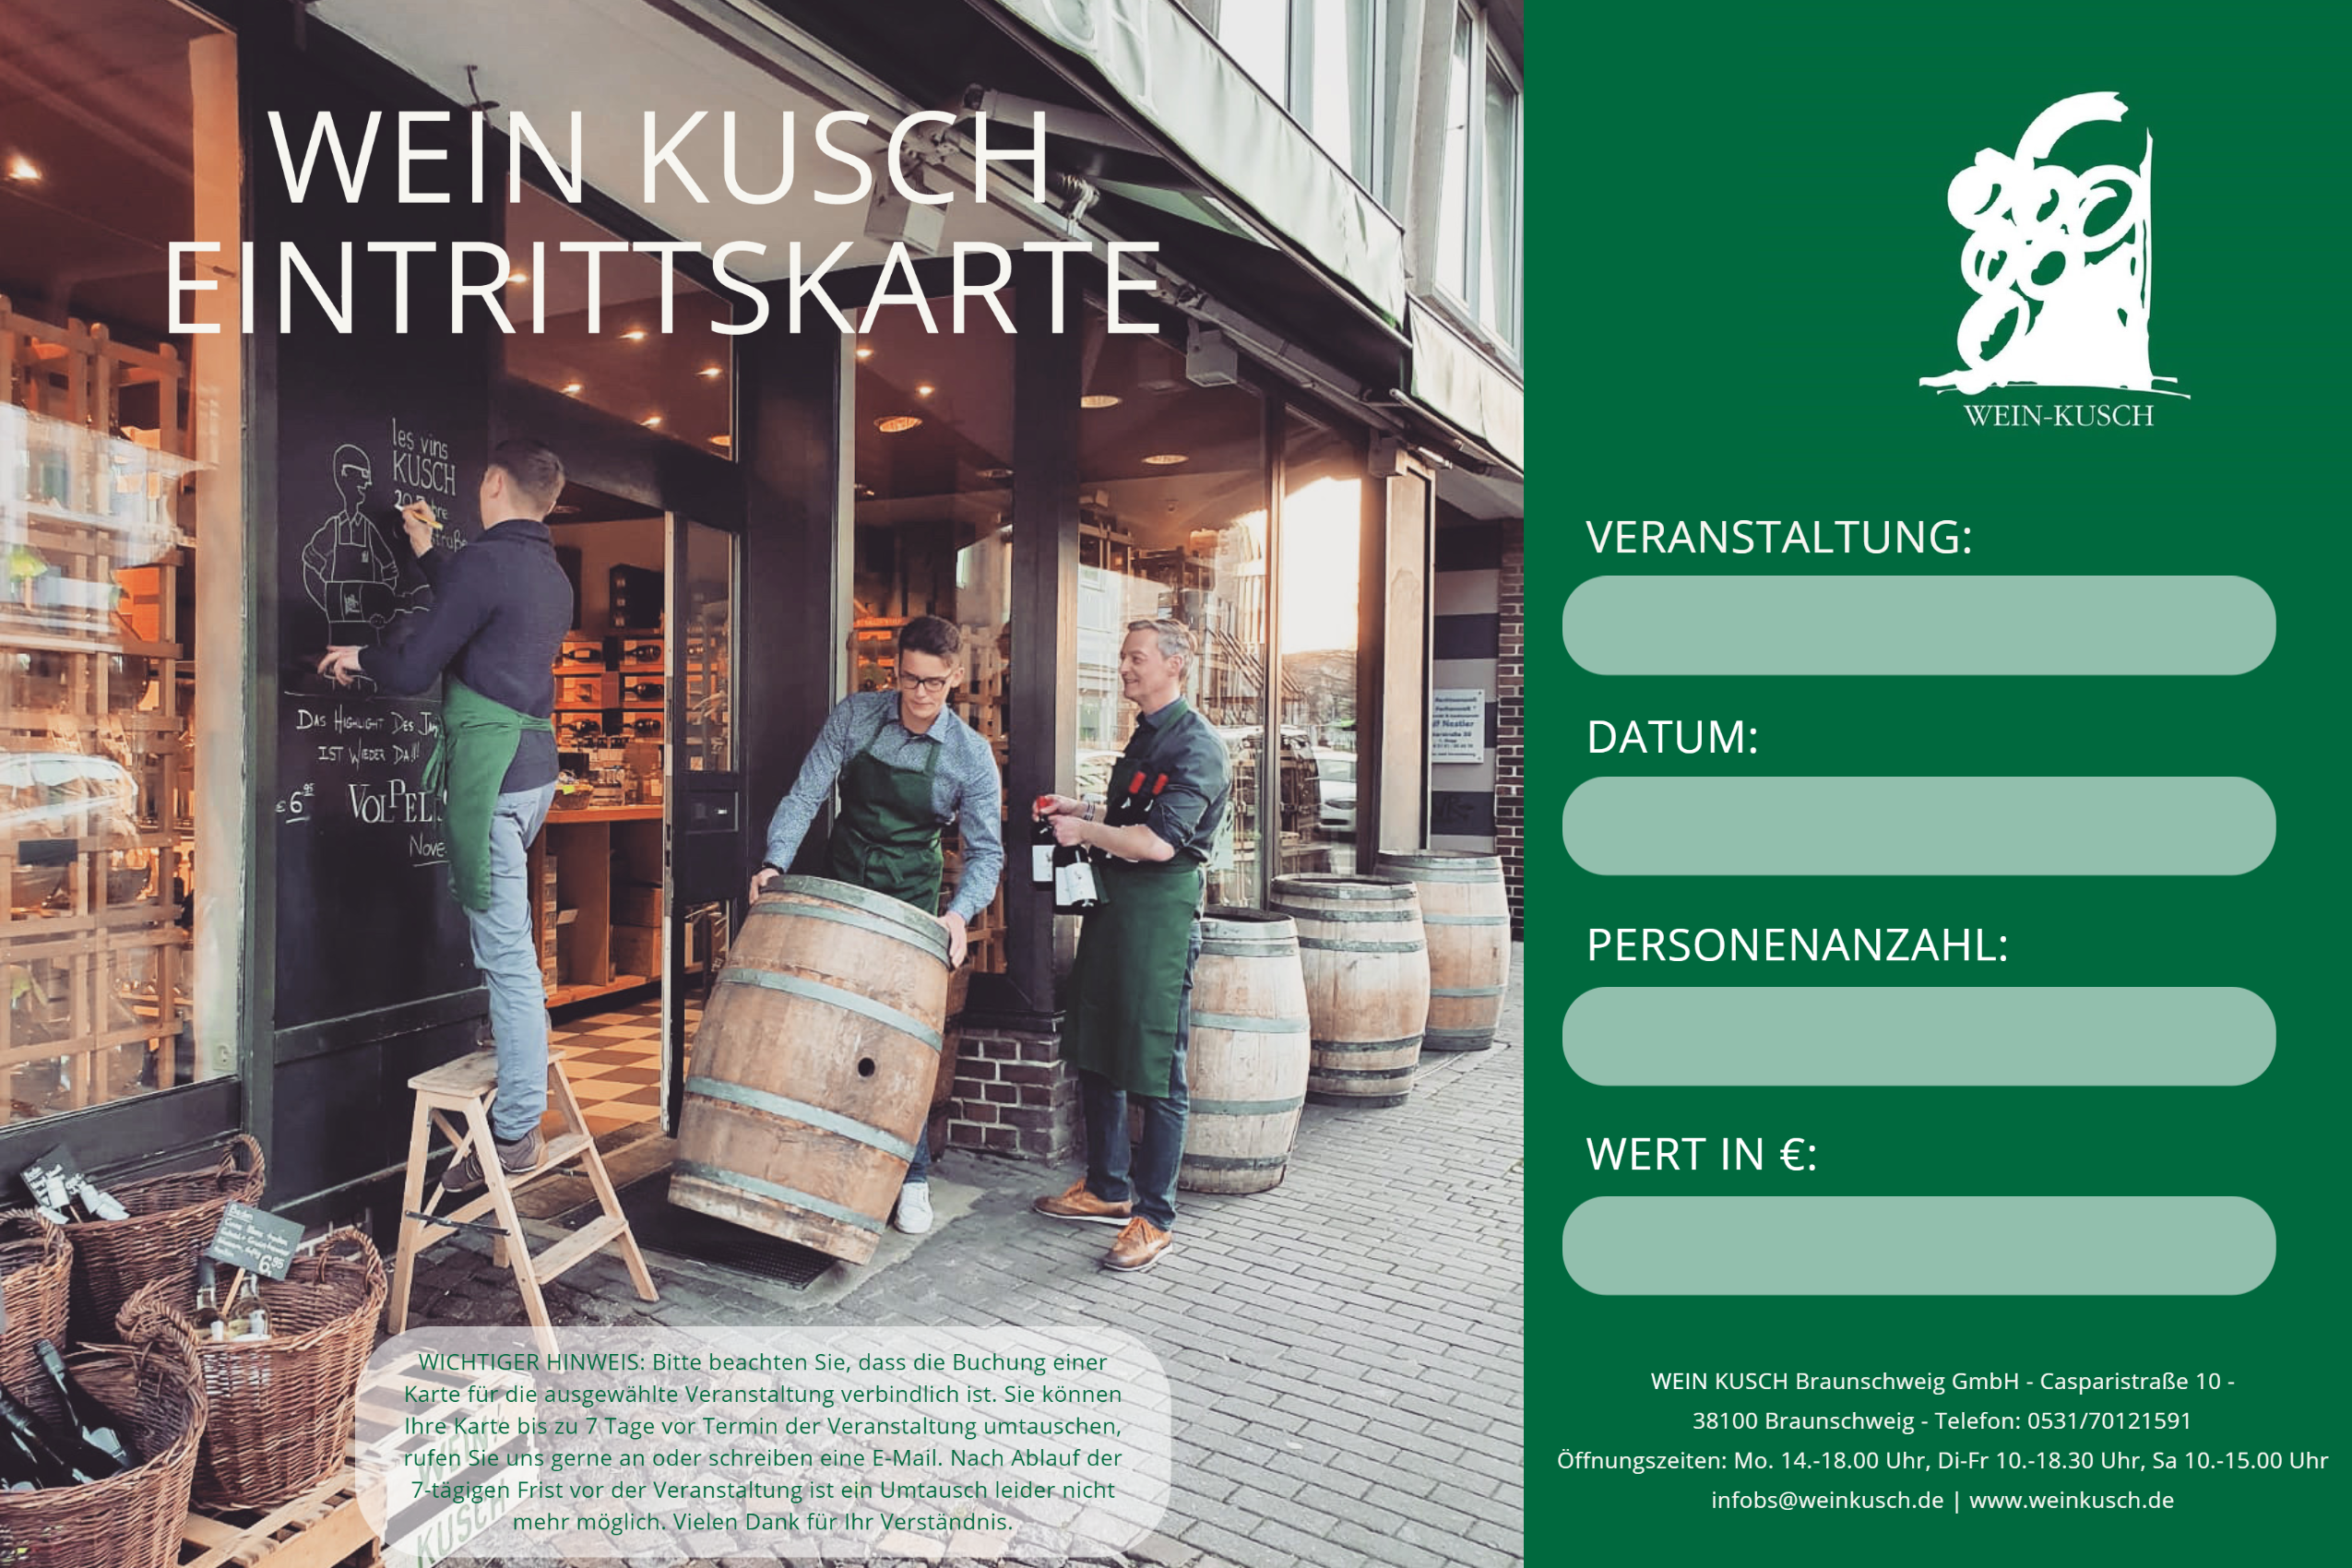 2023.01.12 - Weinprobe Primitivo & Co. in Braunschweig 19.00 Uhr